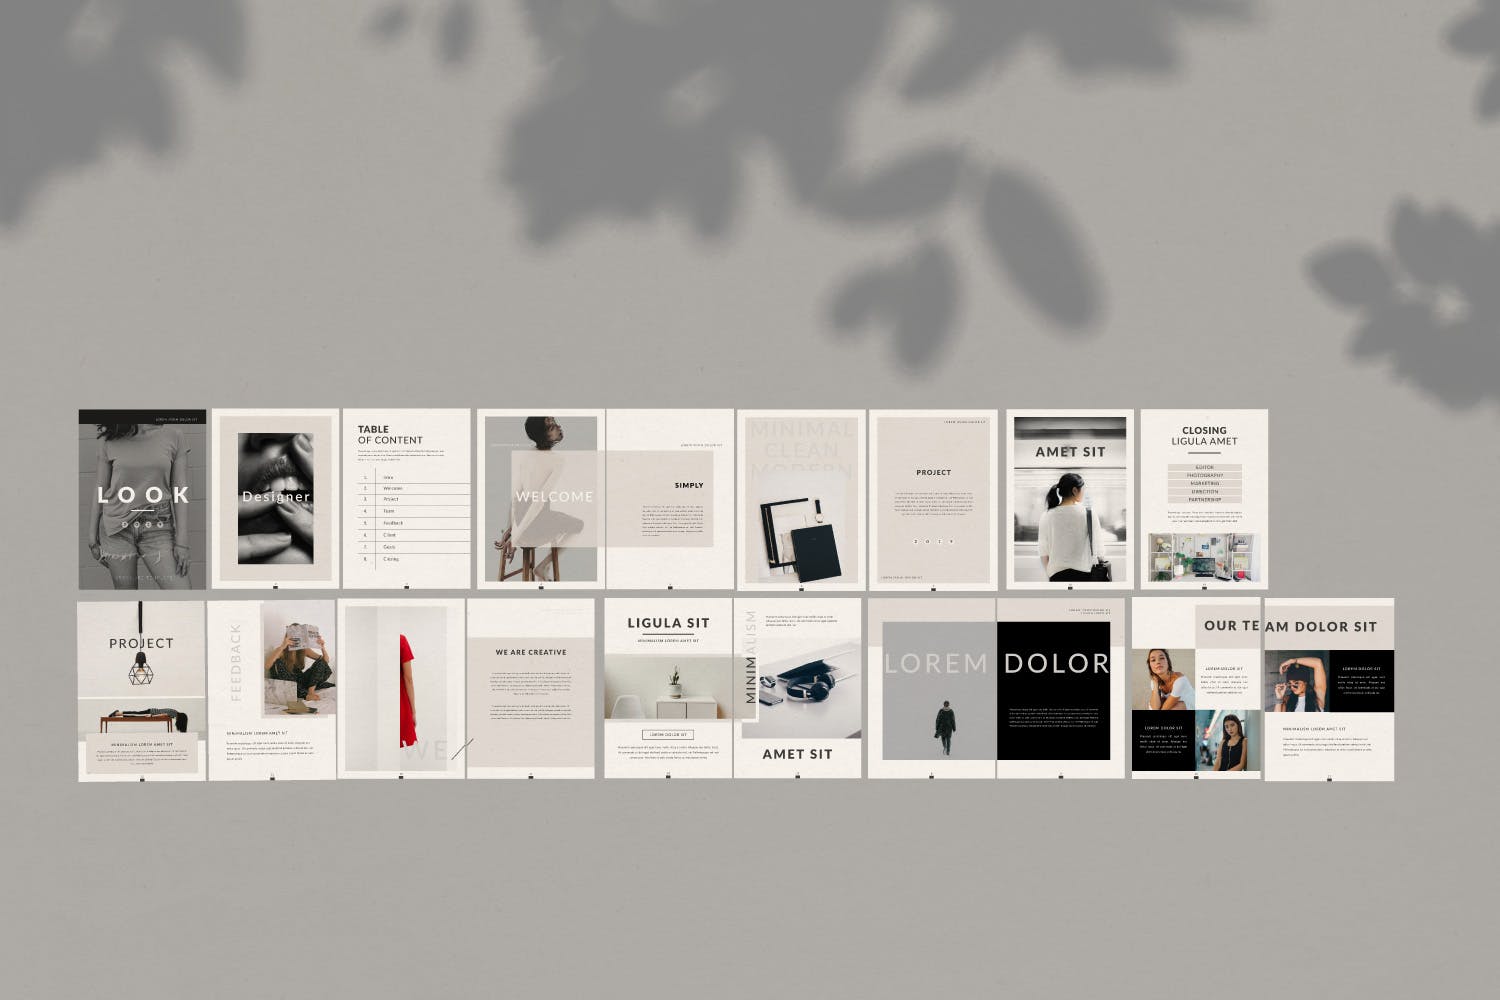 极简主义设计风格企业业务手册第一素材精选Lookbook设计模板 Lookbook插图(4)